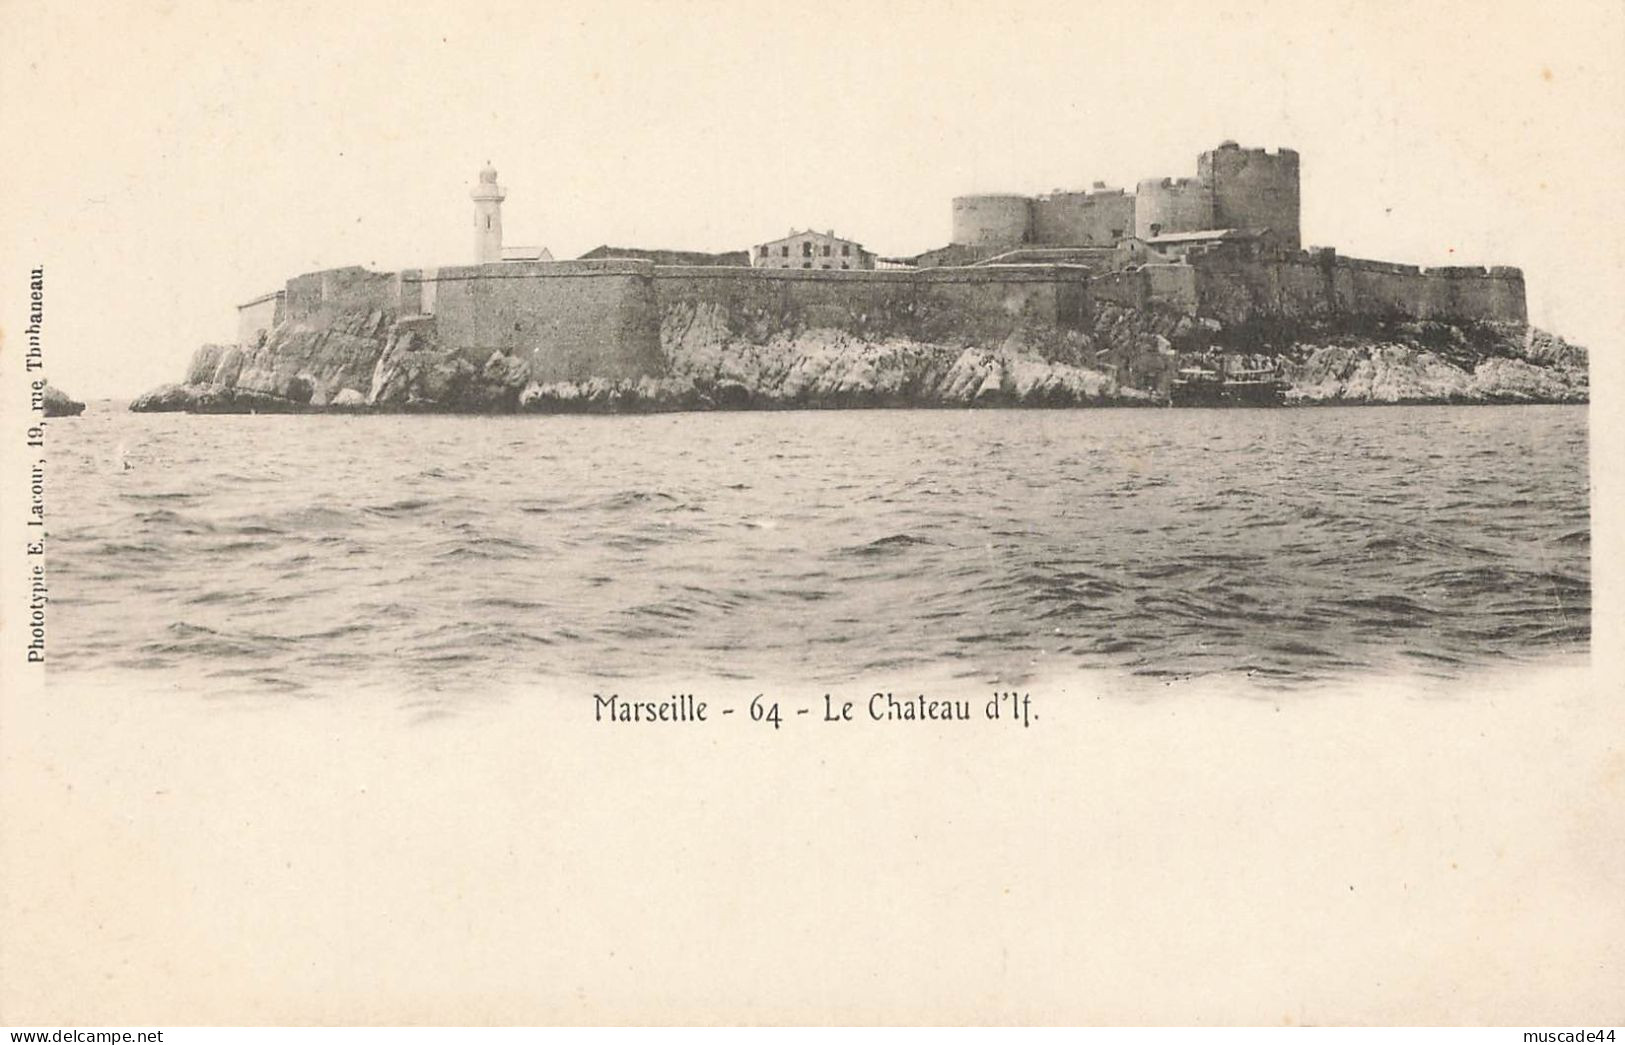 MARSEILLE - LE CHATEAU D IF - Castillo De If, Archipiélago De Frioul, Islas...